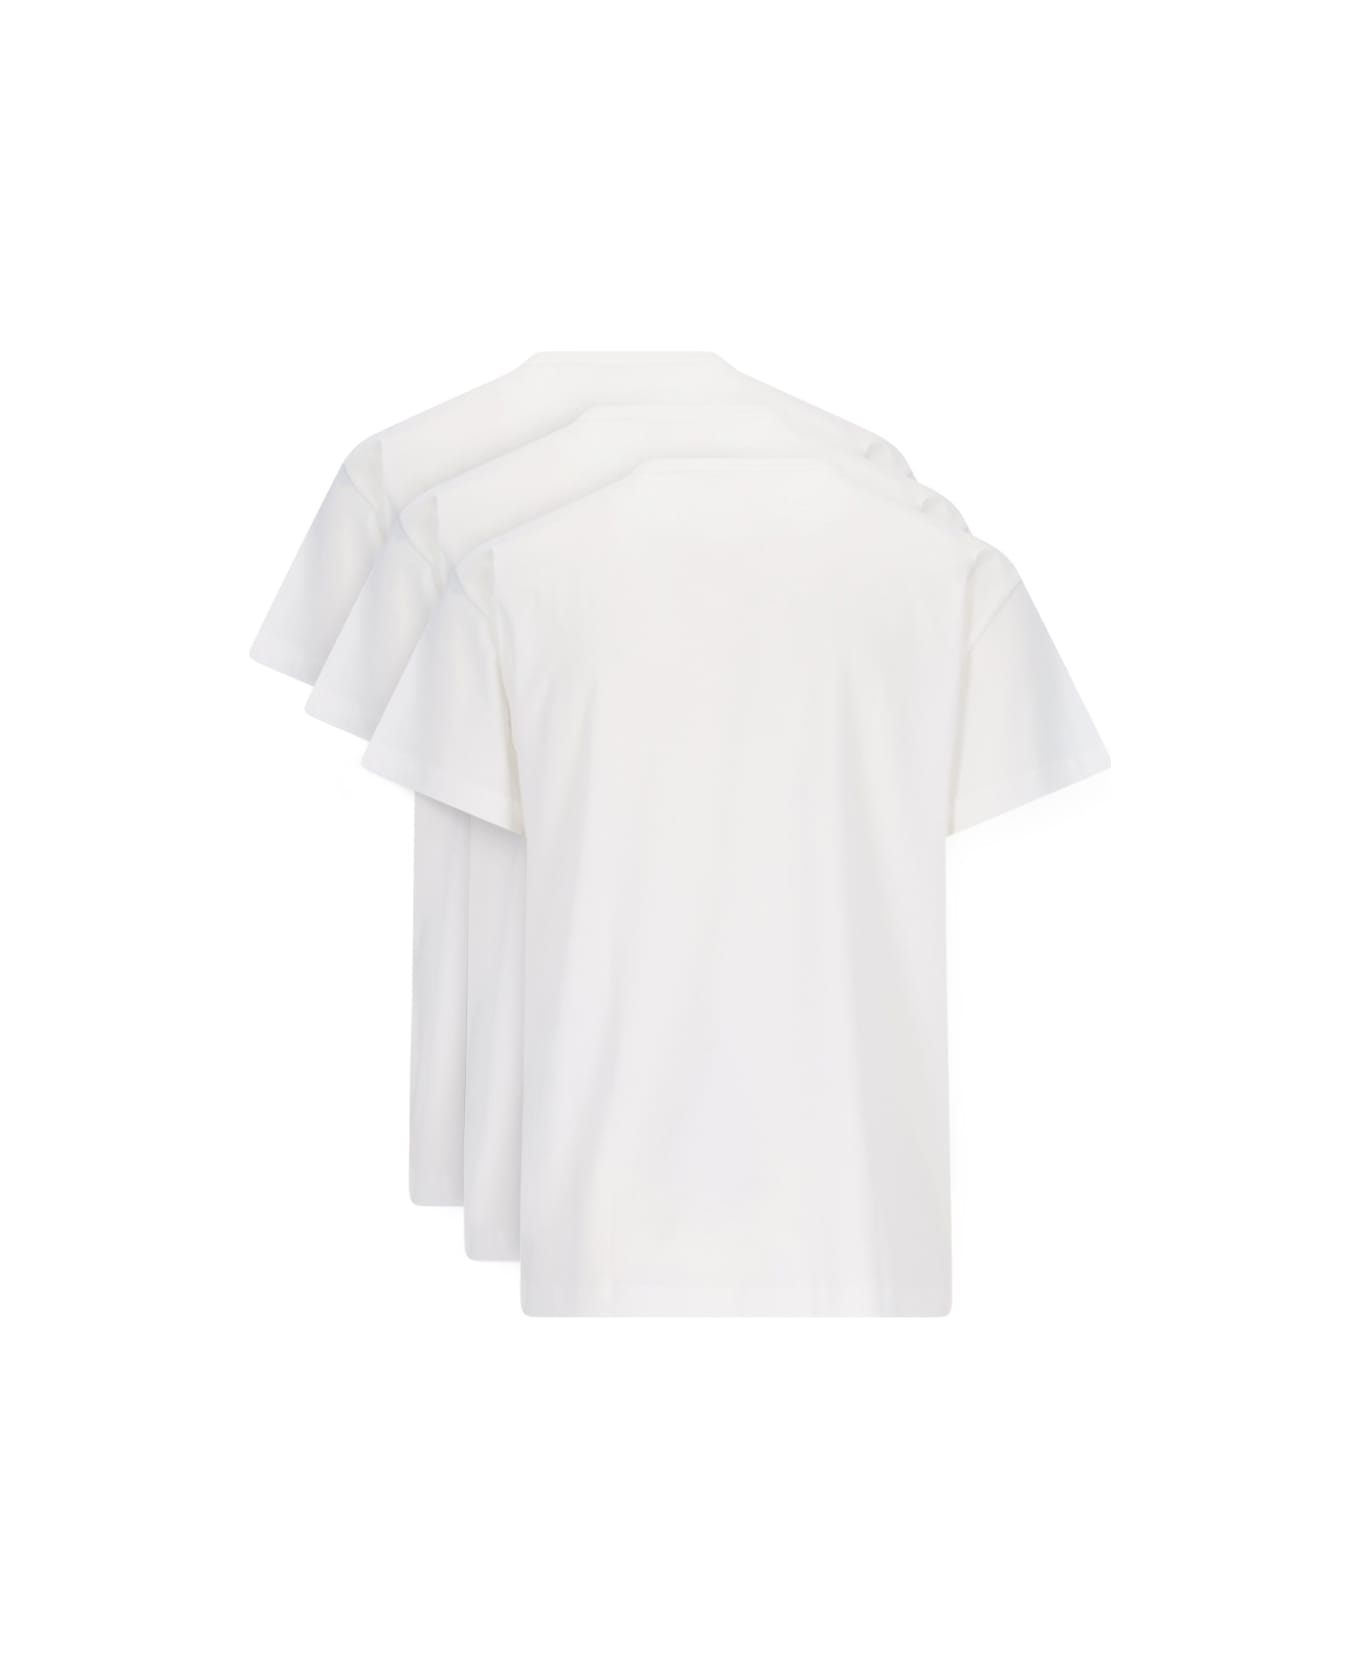 Jil Sander '3-pack' T-shirt Set - White